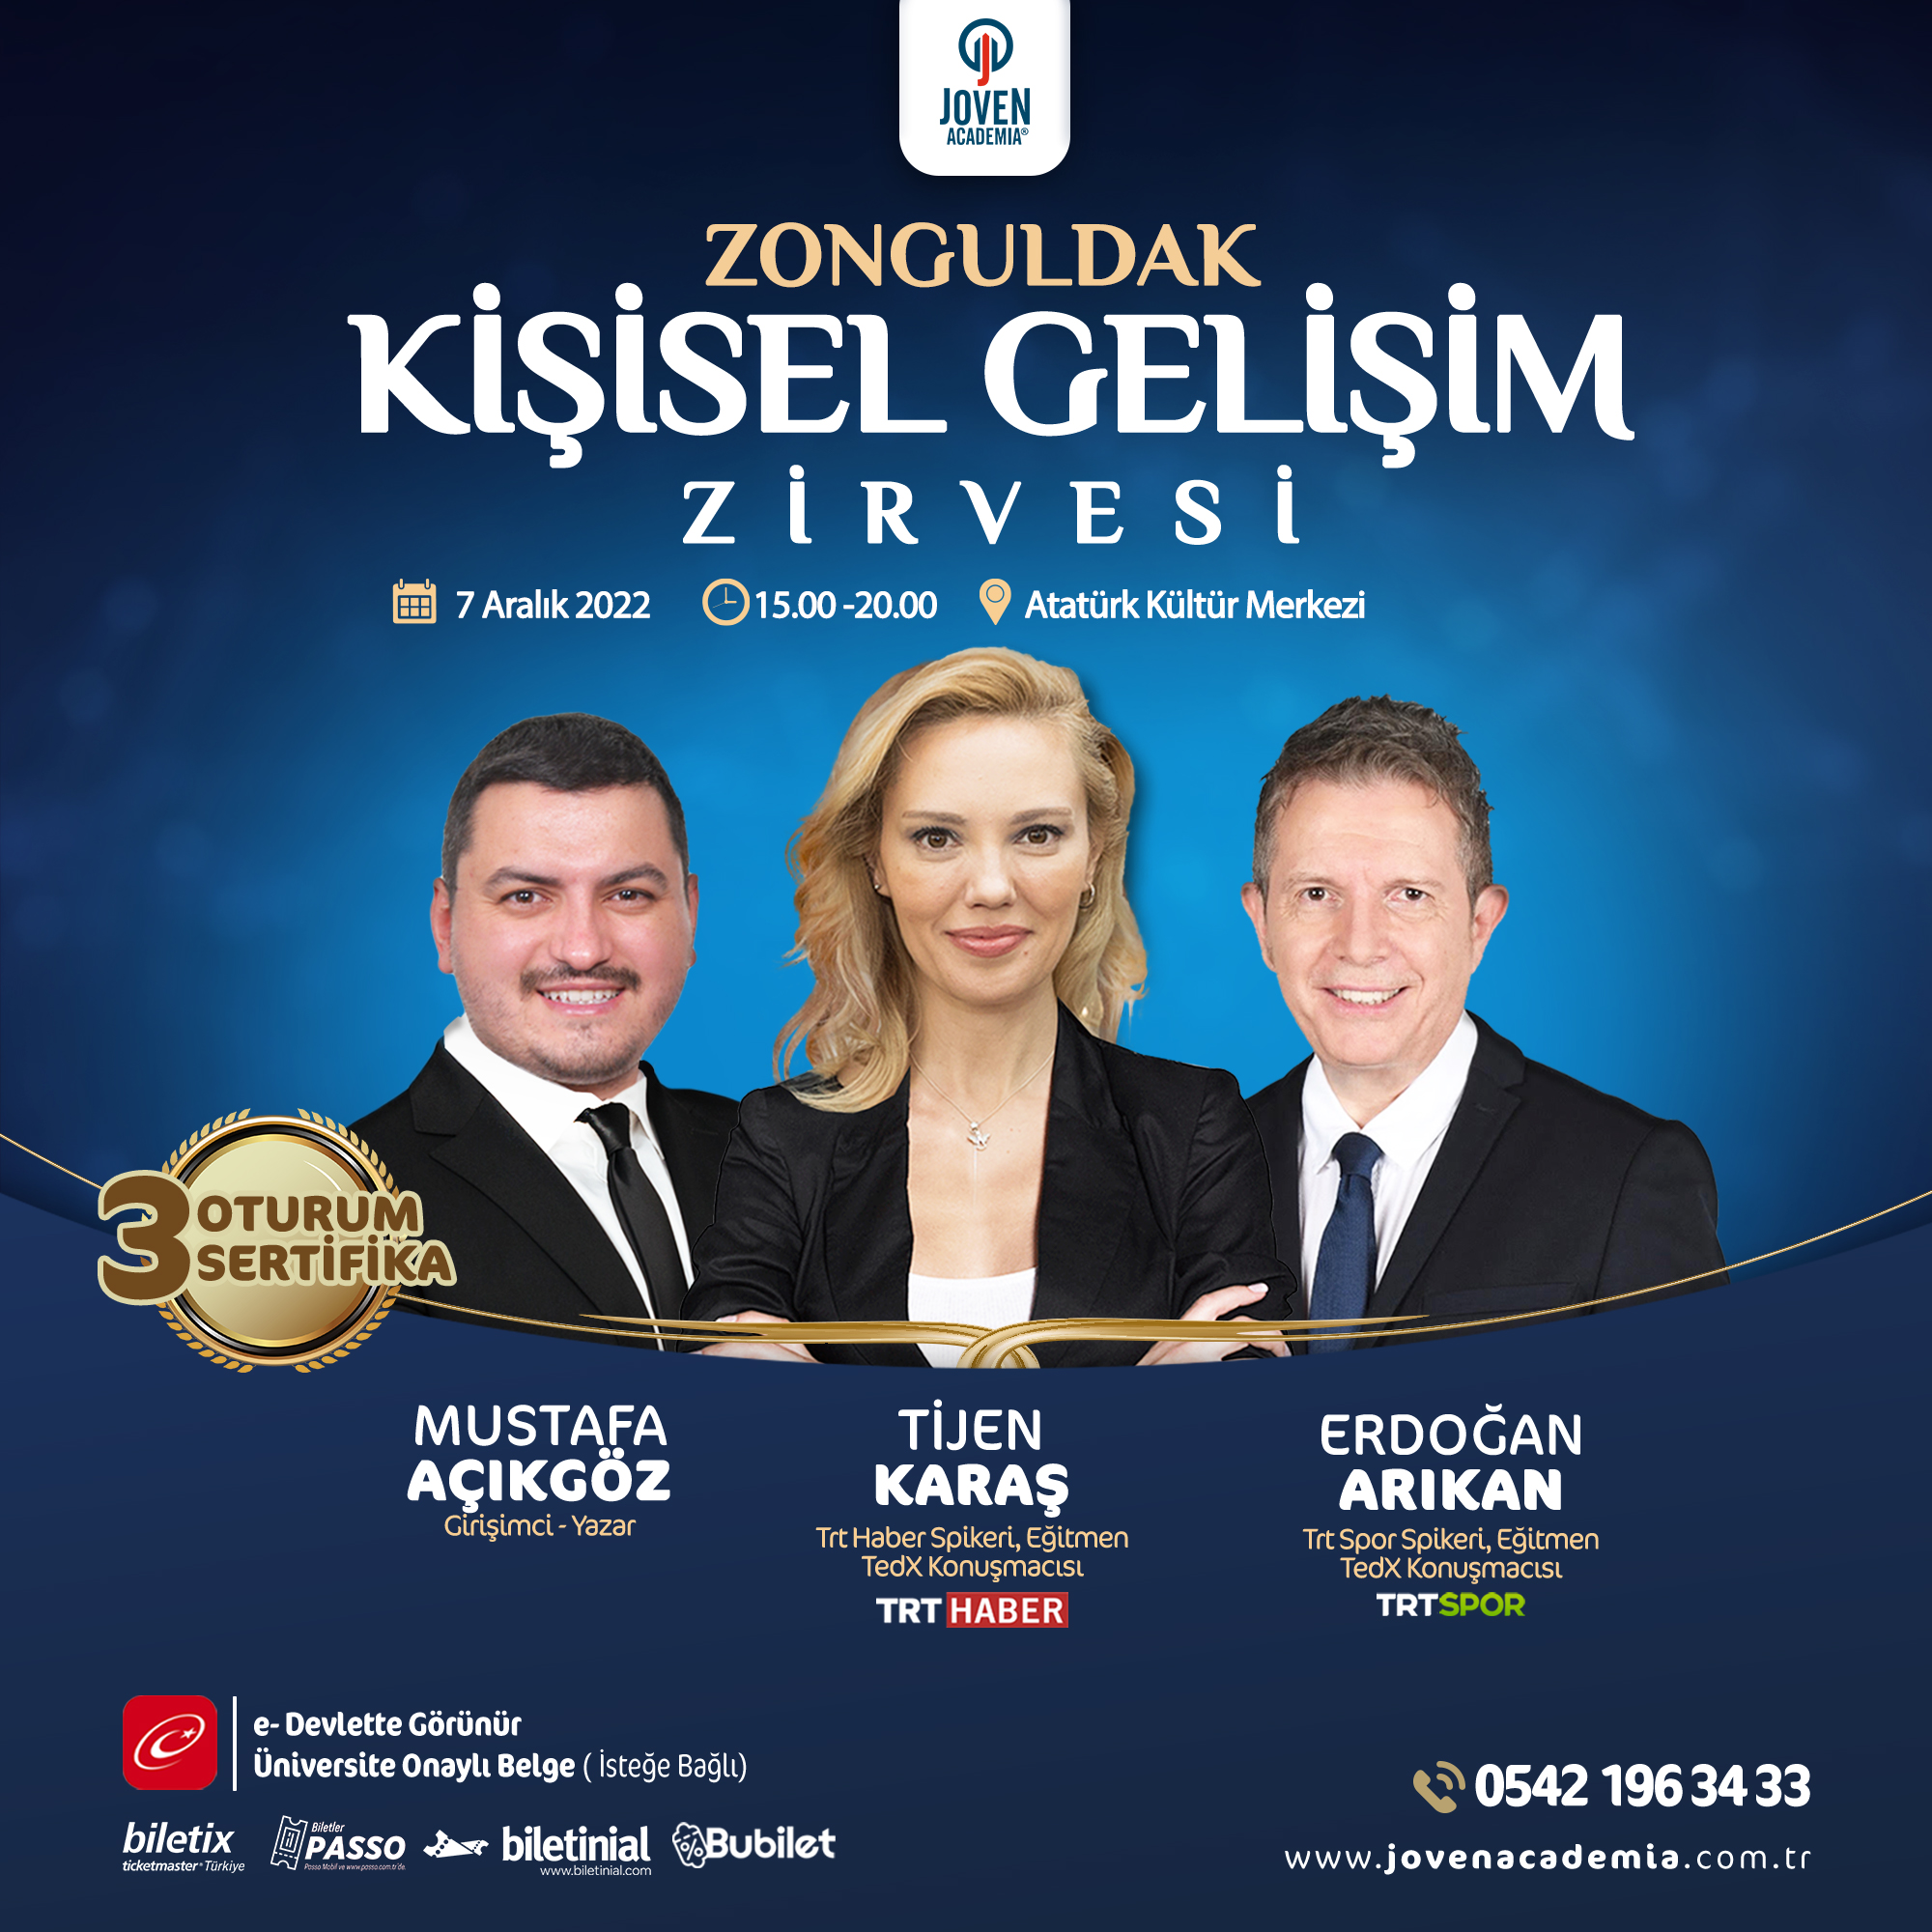 Zonguldak Kişisel Gelişim Zirvesi (7 Aralık 2022)